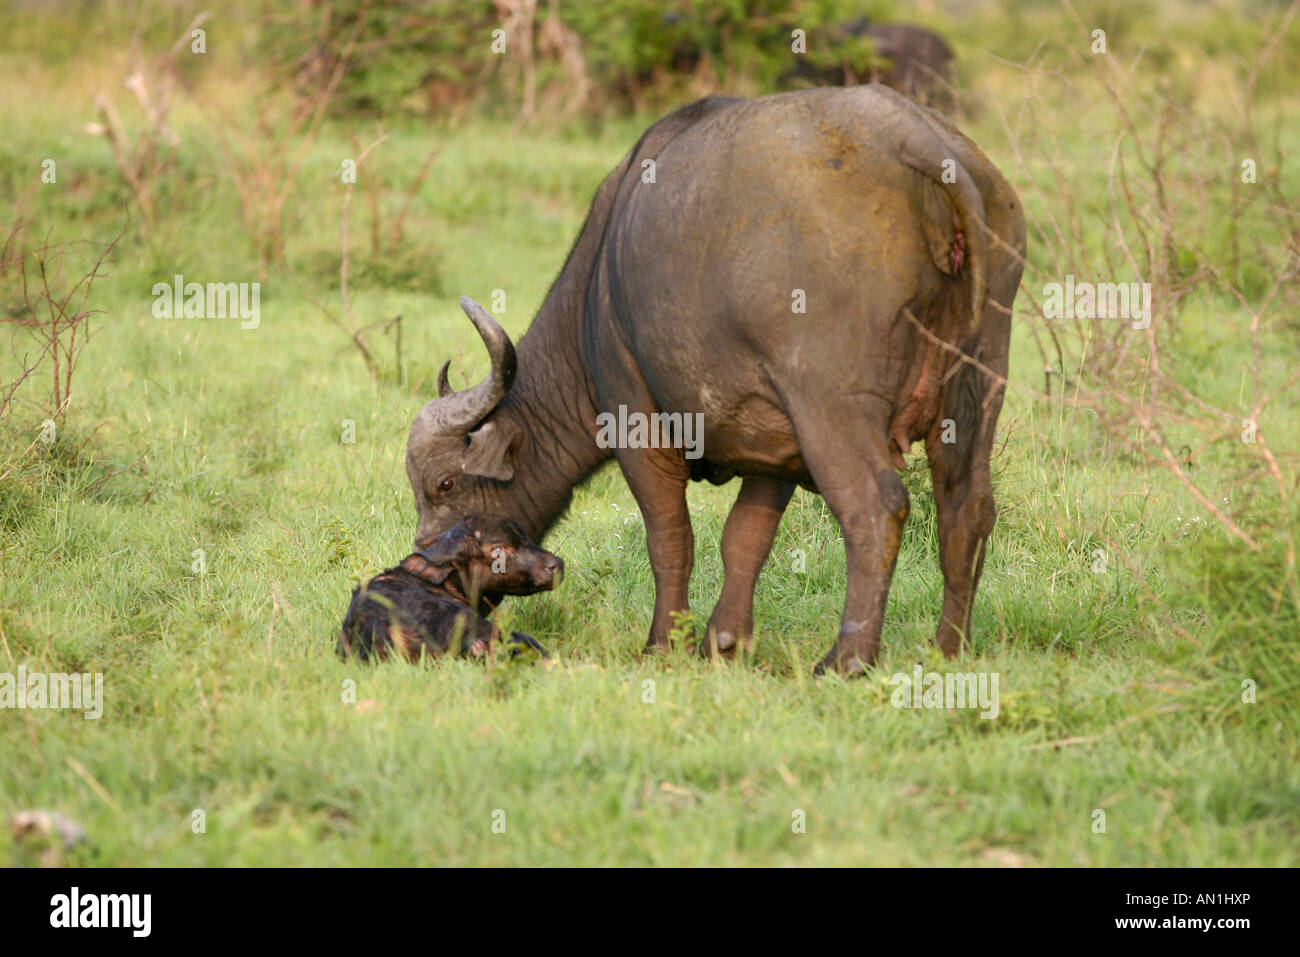 Una bufala mucca in piedi su un vitello neonato sdraiato in erba Foto Stock